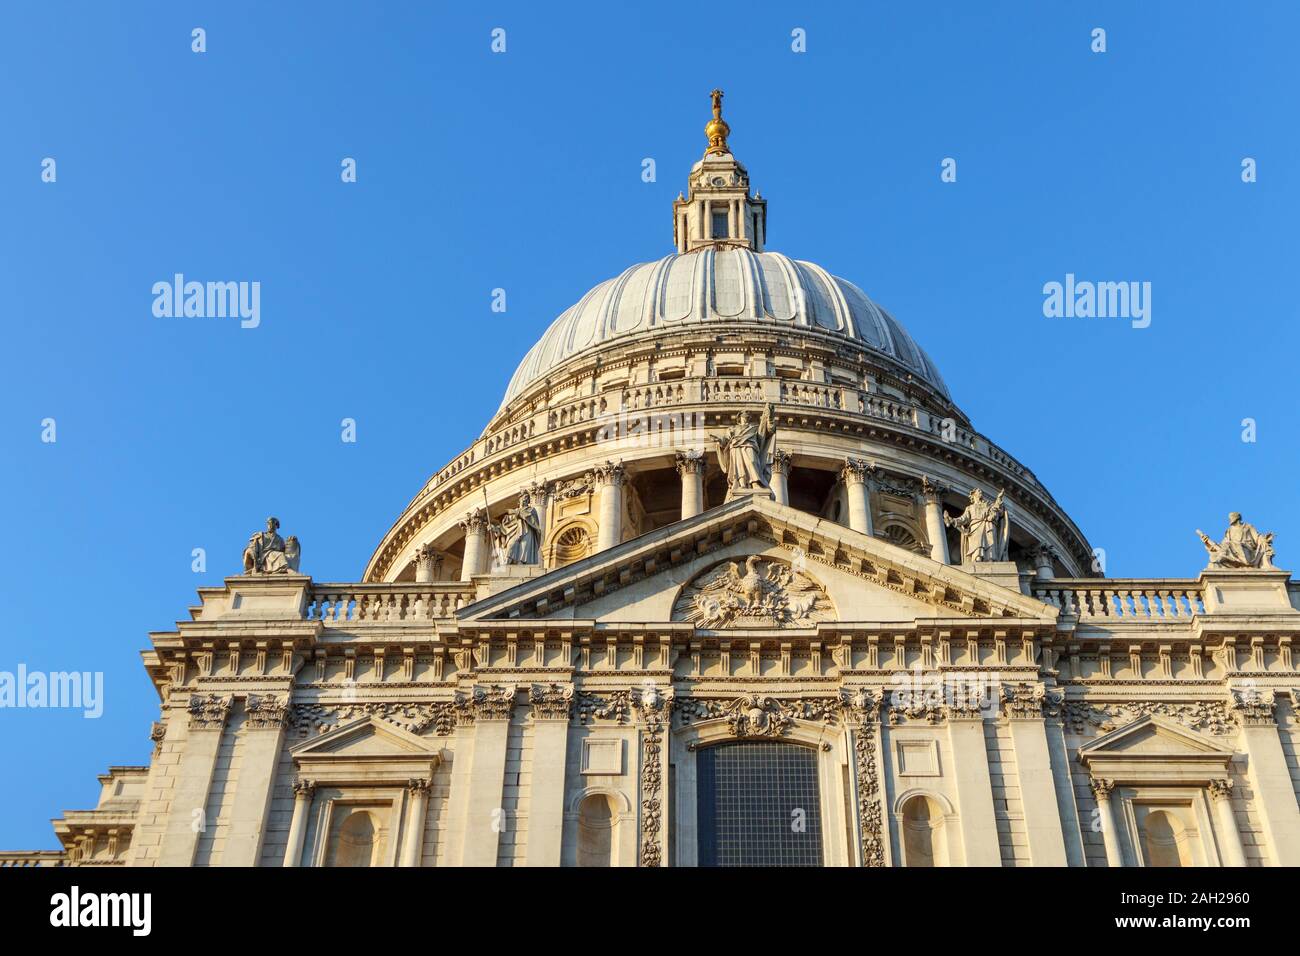 Vue sur l'emblématique monument historique de Londres, la Cathédrale St Paul avec son dôme conçu par Sir Christopher Wren, sur une journée ensoleillée d'automne Banque D'Images